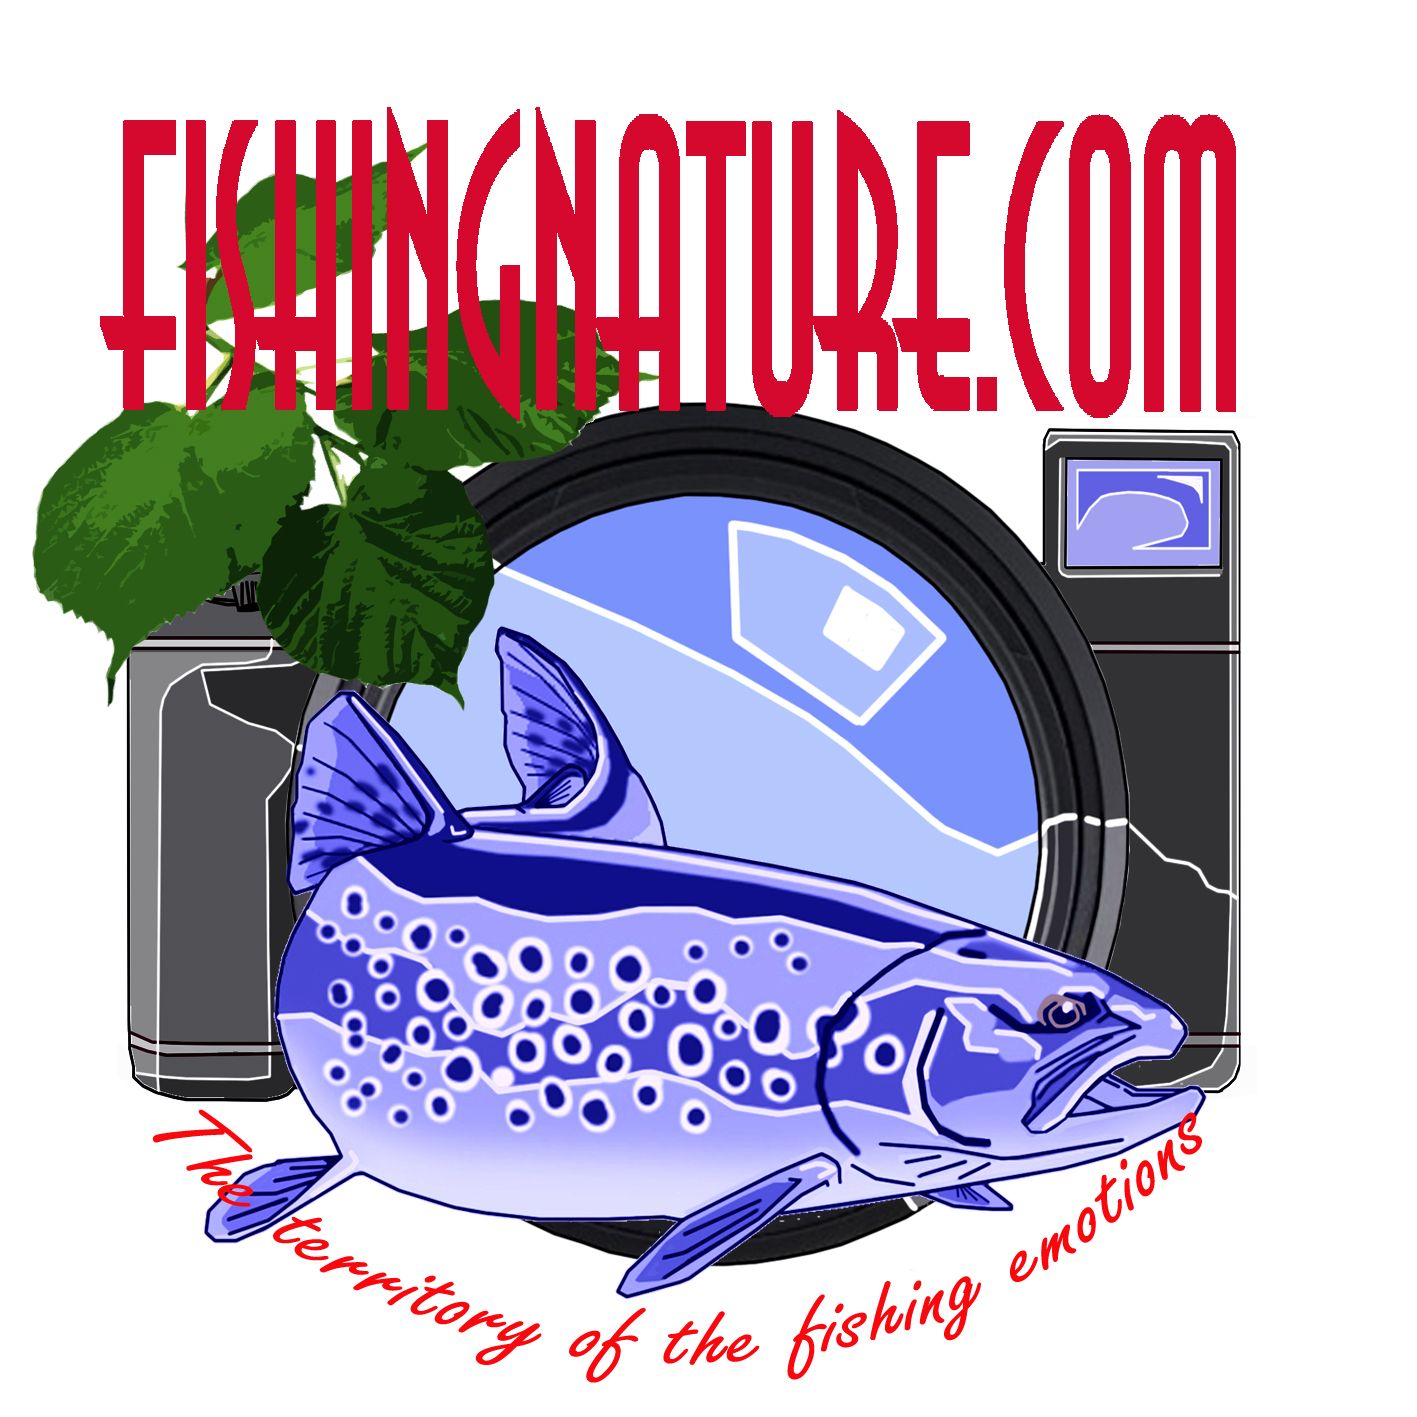 Лого он-лайн фотожурнала о рыболовстве и природе - дизайнер omega7779